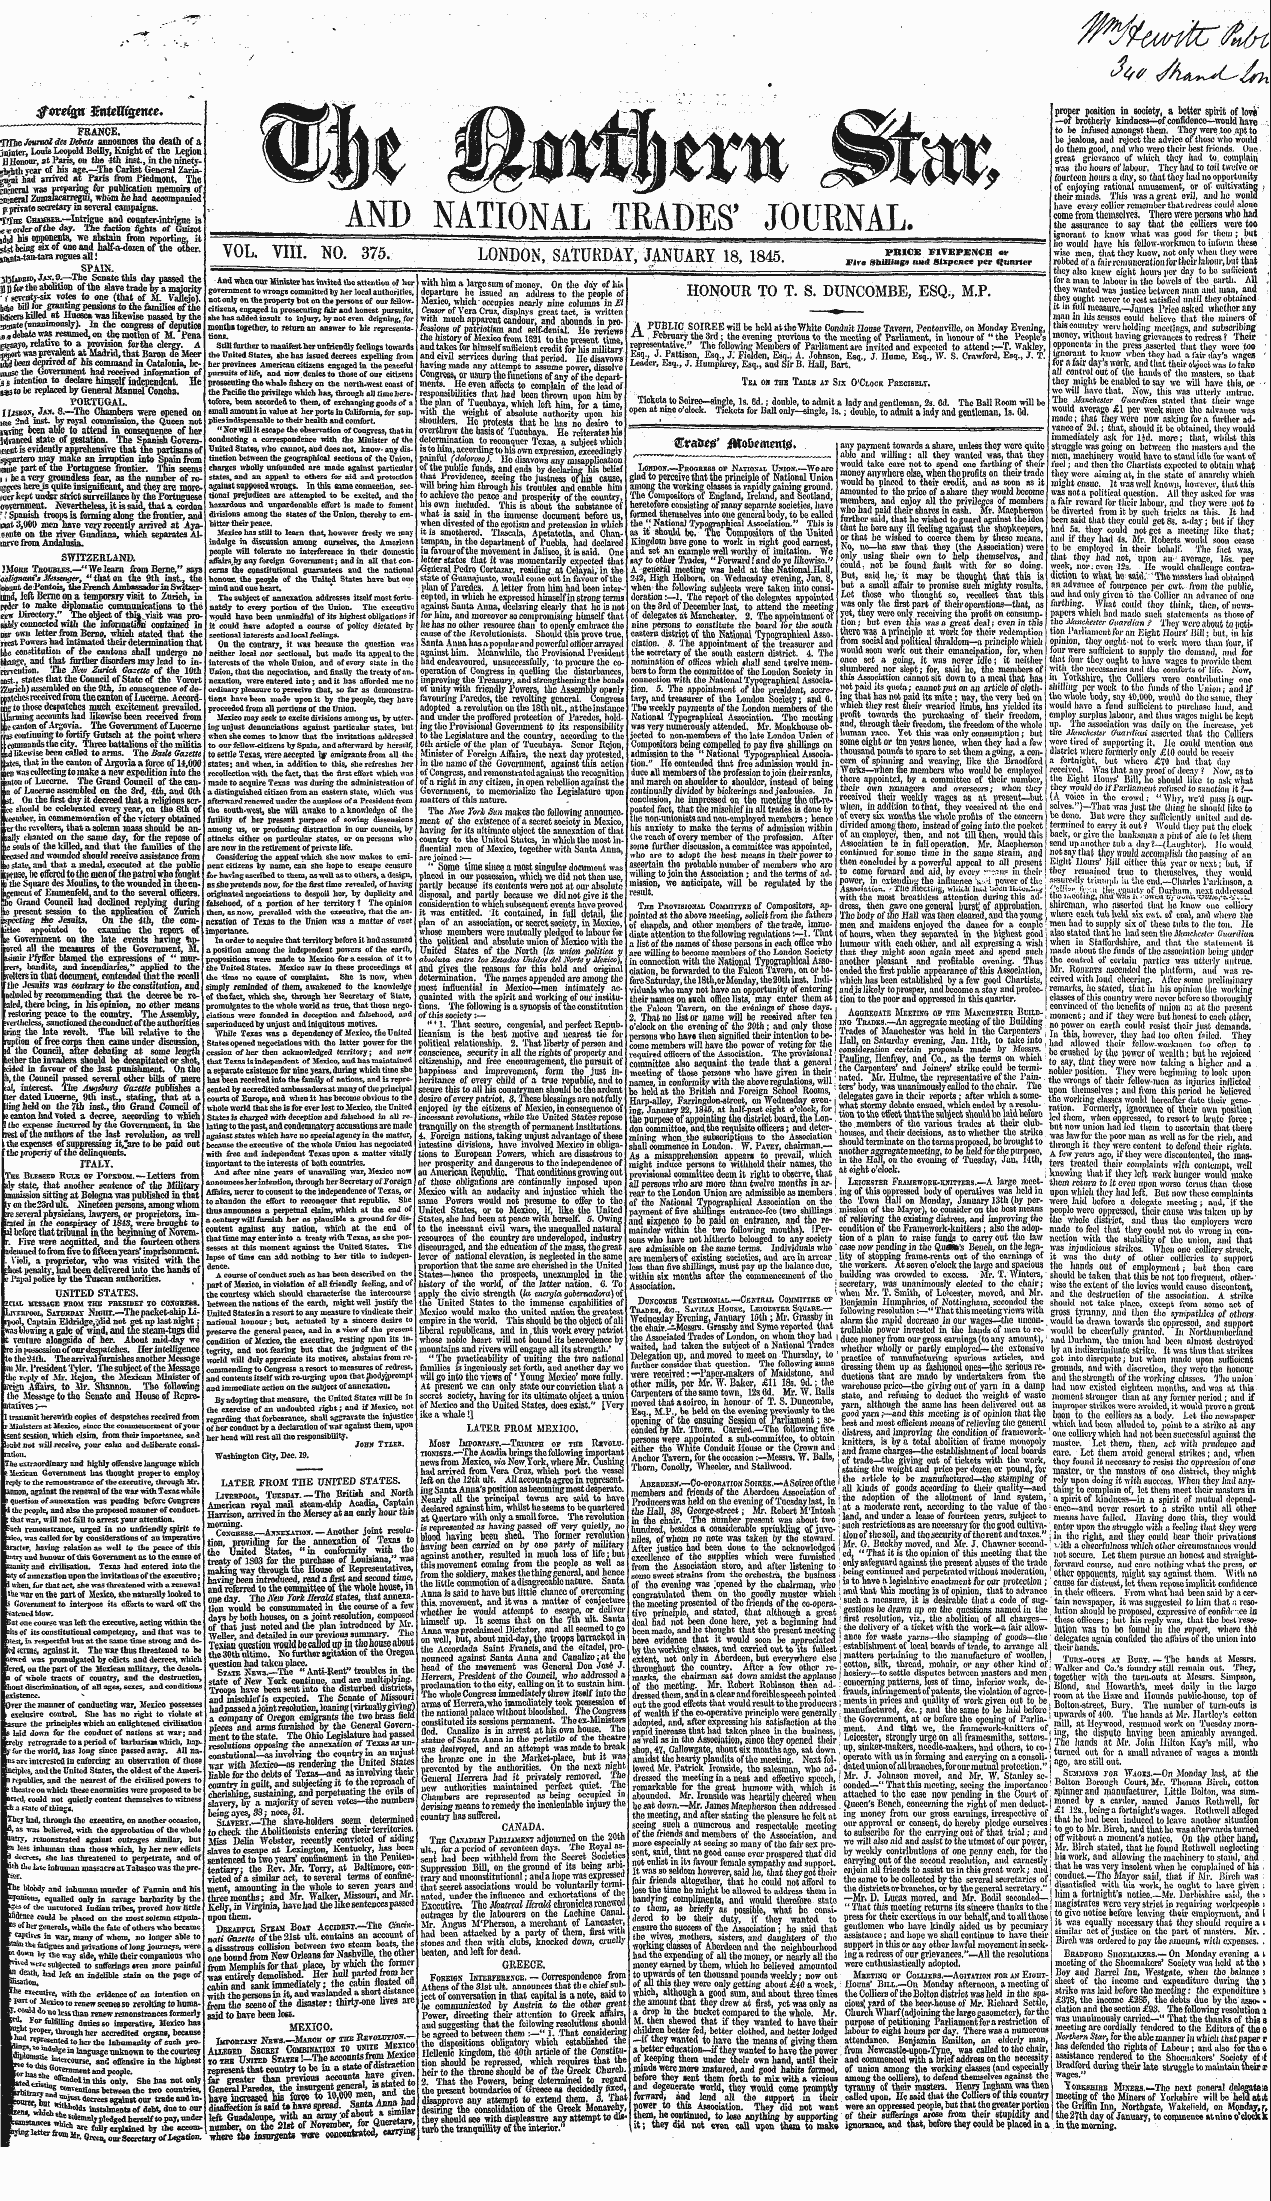 Northern Star (1837-1852): jS F Y, 3rd edition - Ar00106